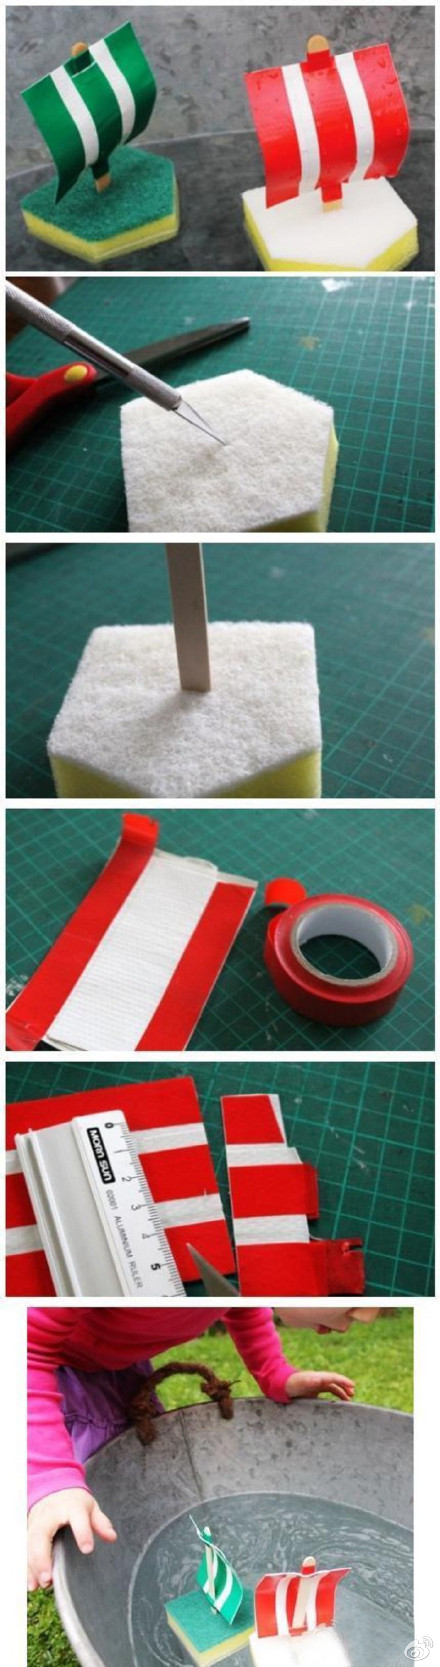 吃剩的冰棍棒能DIY出各种有趣的实用小物，可以跟宝宝一起制作哦！